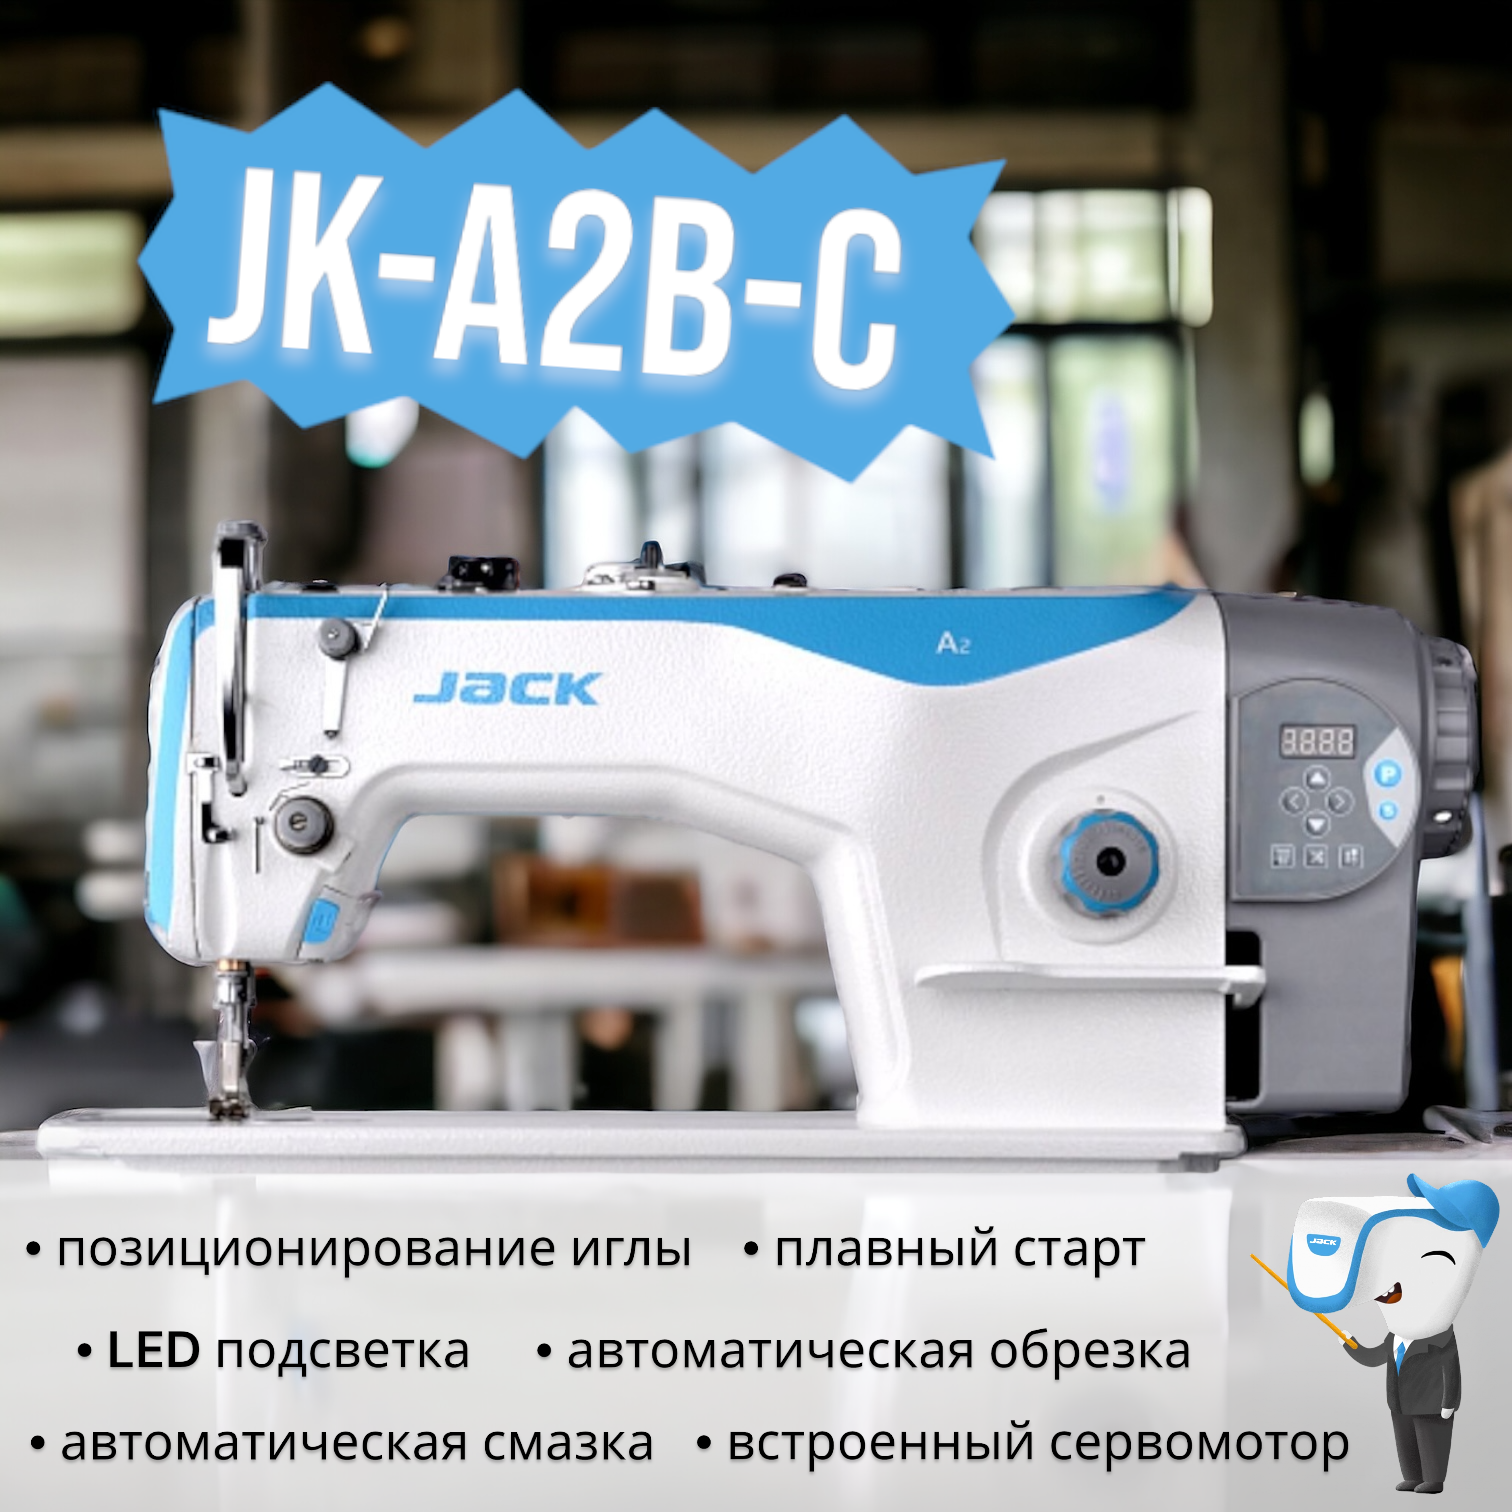 Промышленная одноигольная прямострочная машина Jack JK-A2B-C челночного стежка, с нижним транспортером и автоматикой, для стачивания лёгких и средних тканей.